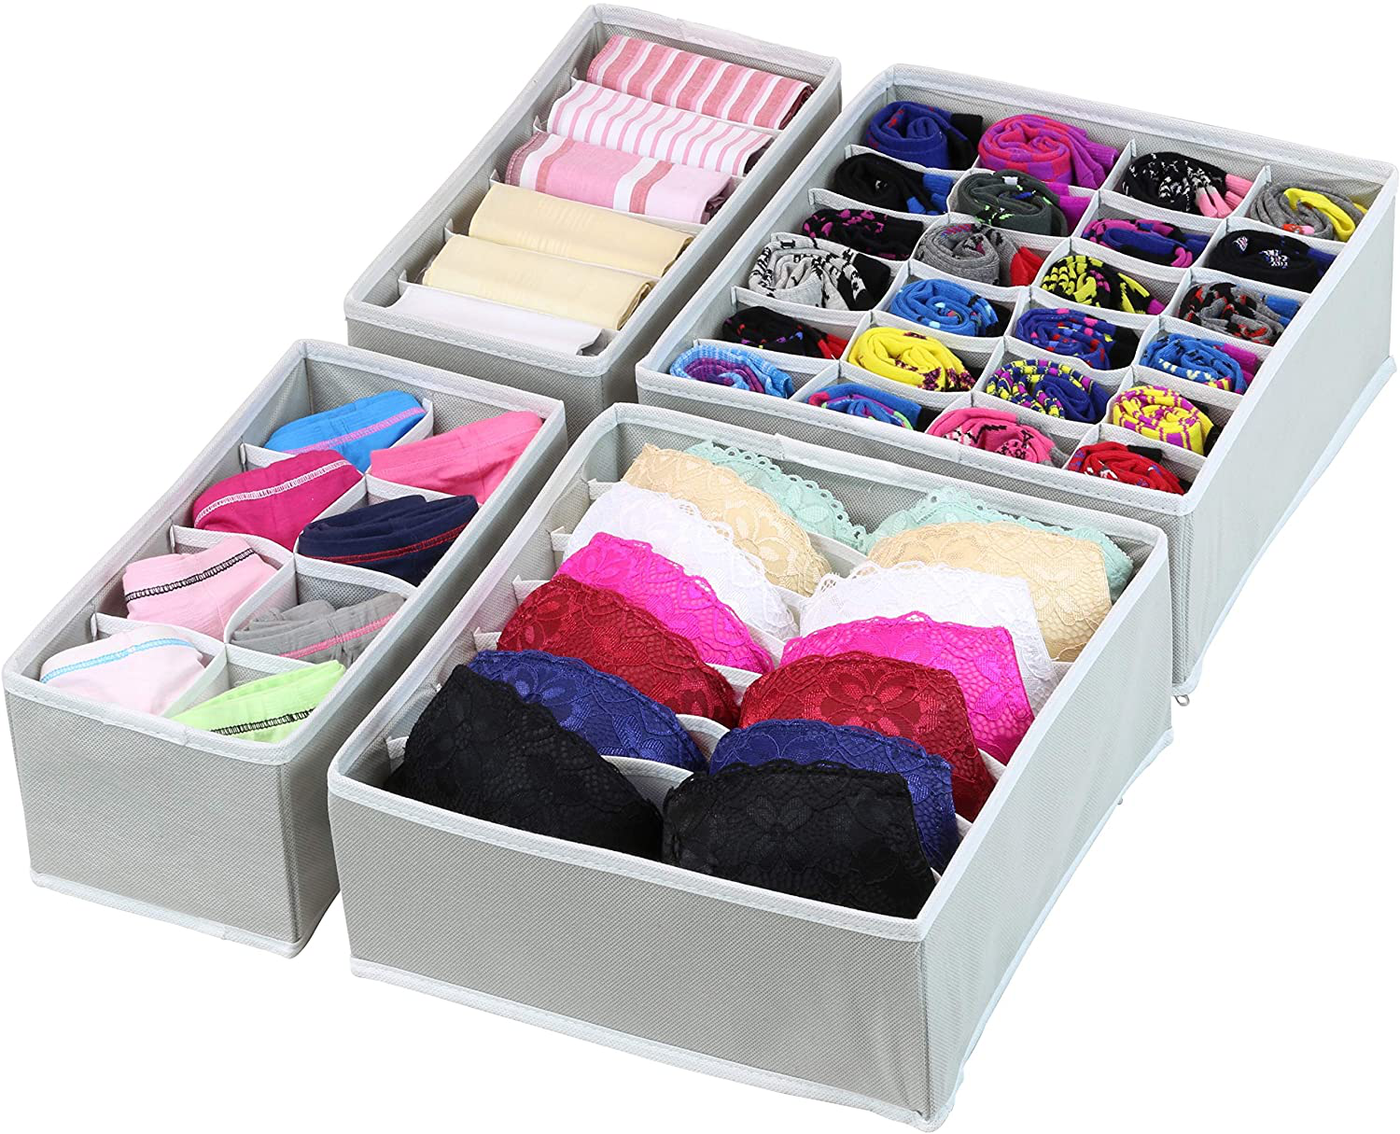 SimpleHouseware Closet Underwear Organizer Drawer Divider 4 Set, Dark Grey